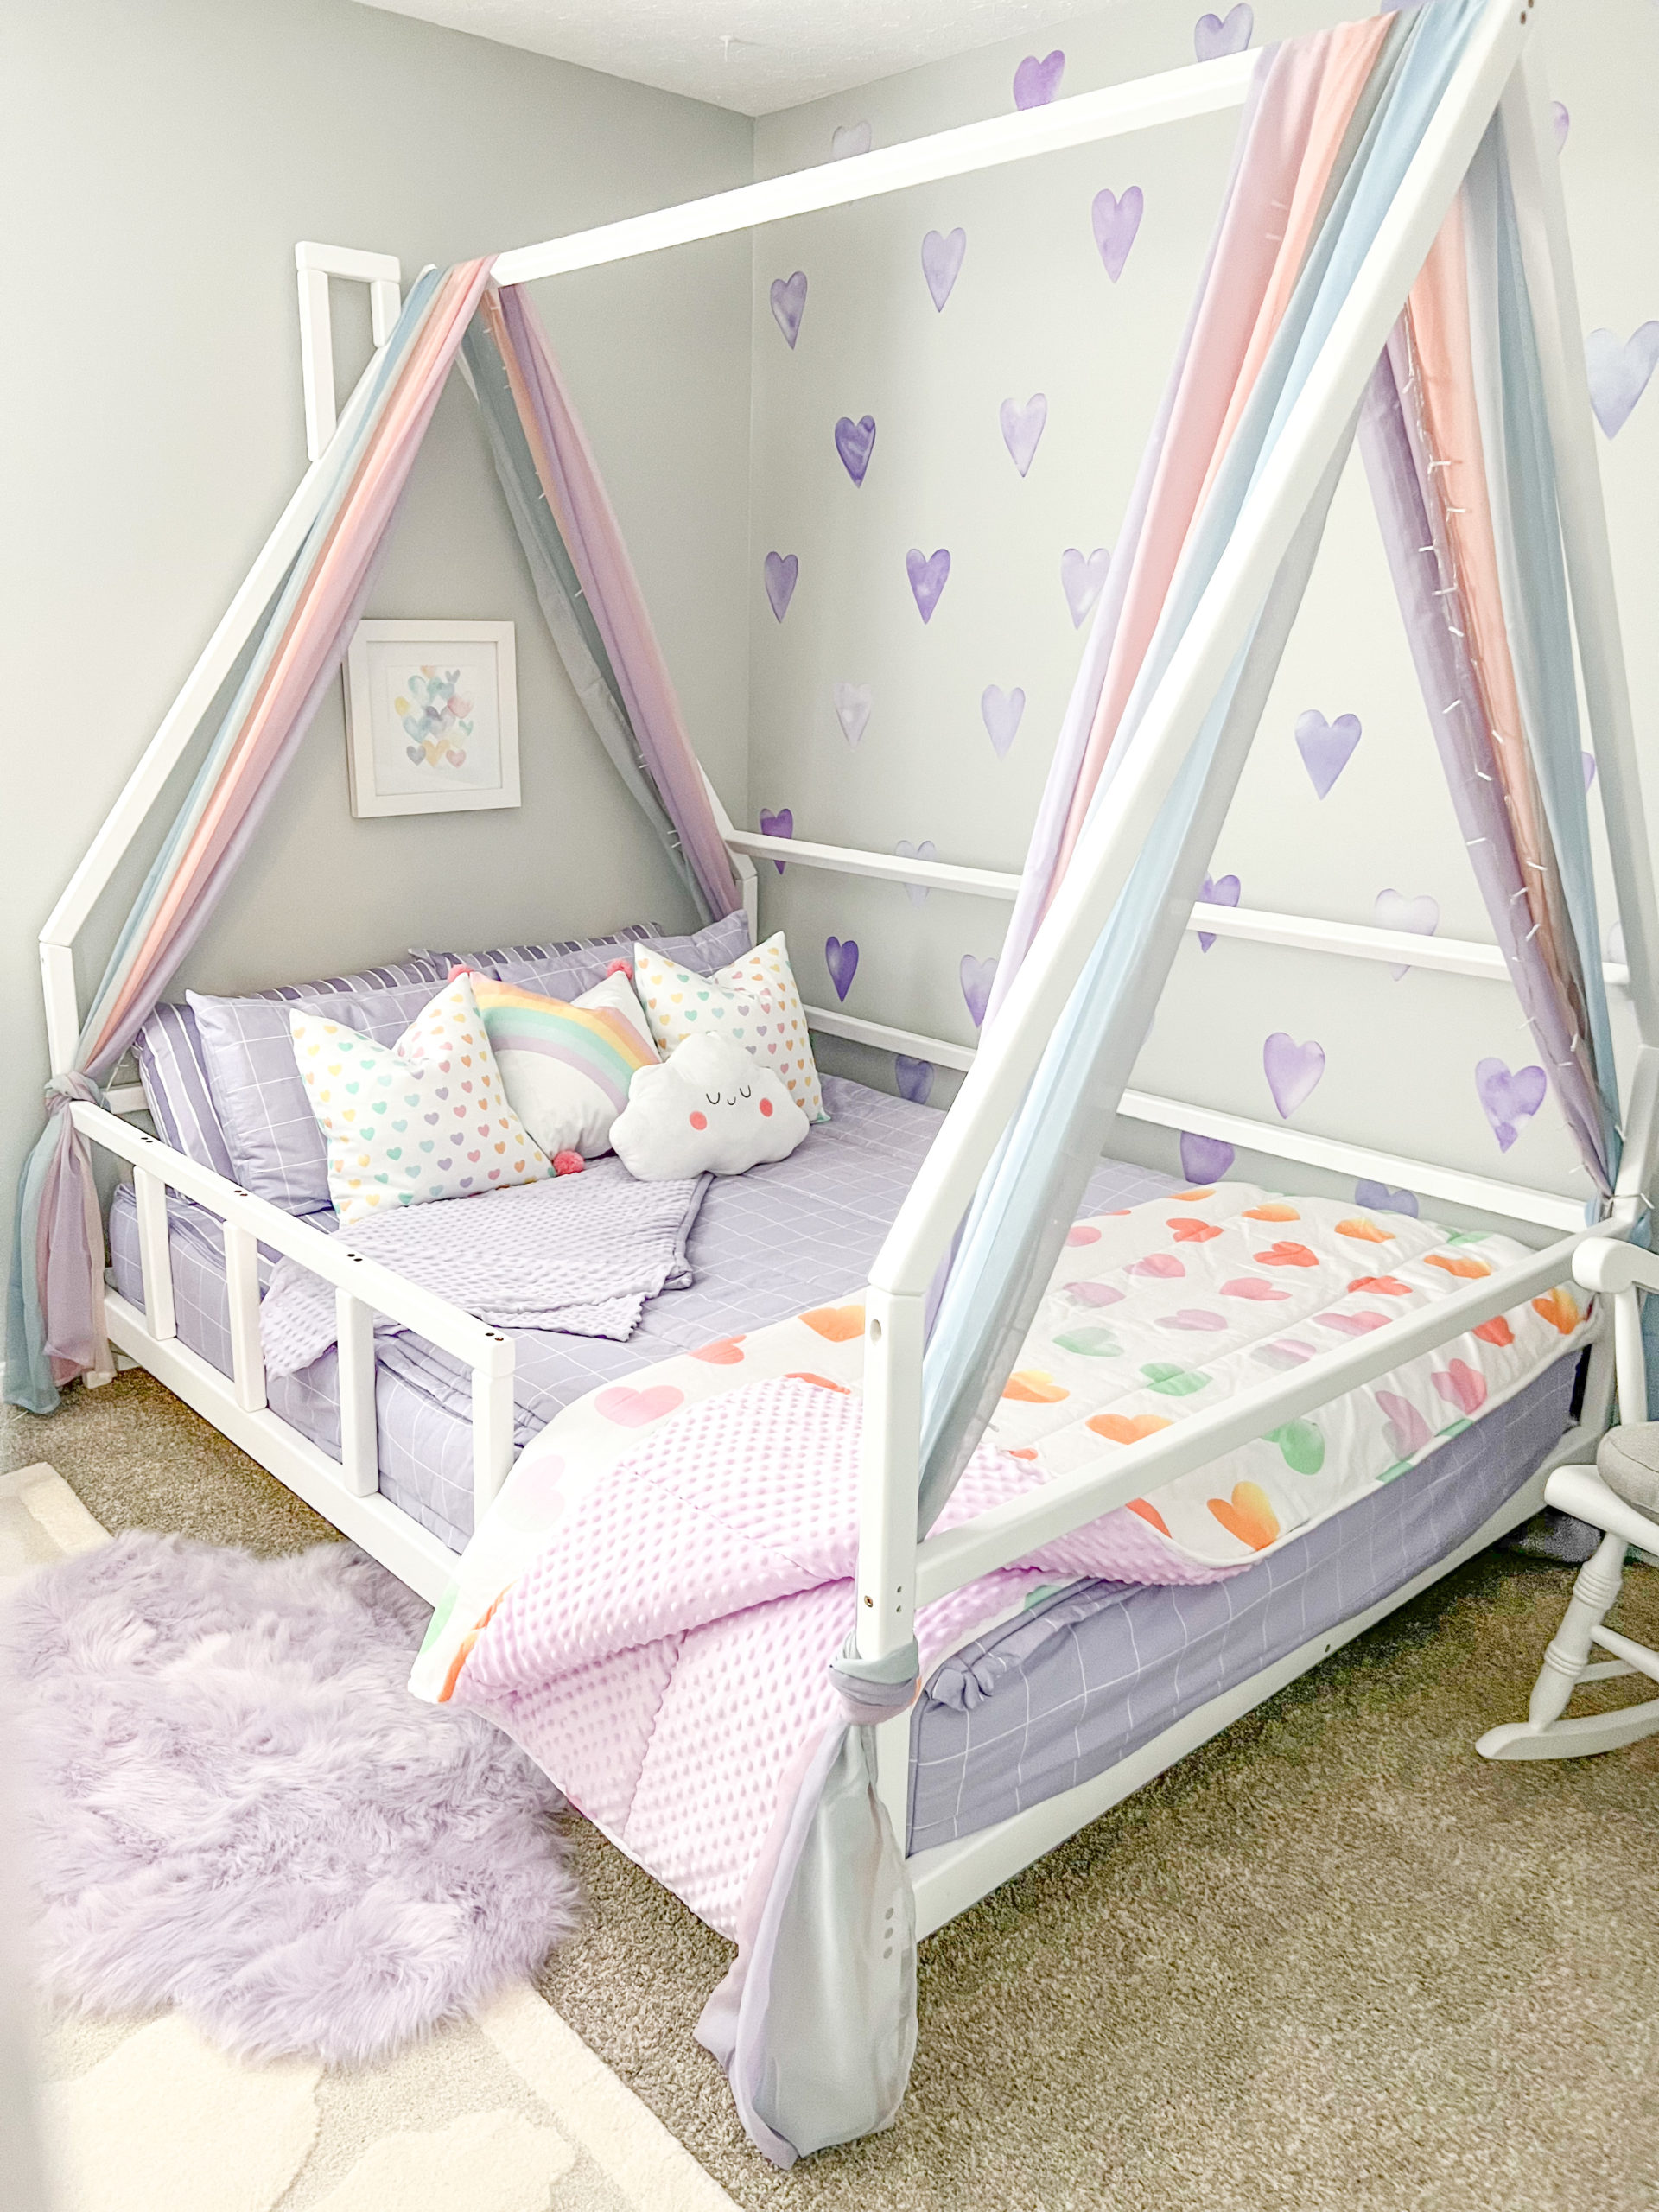 Purple Heart Decals in Little Girl's Bedroom